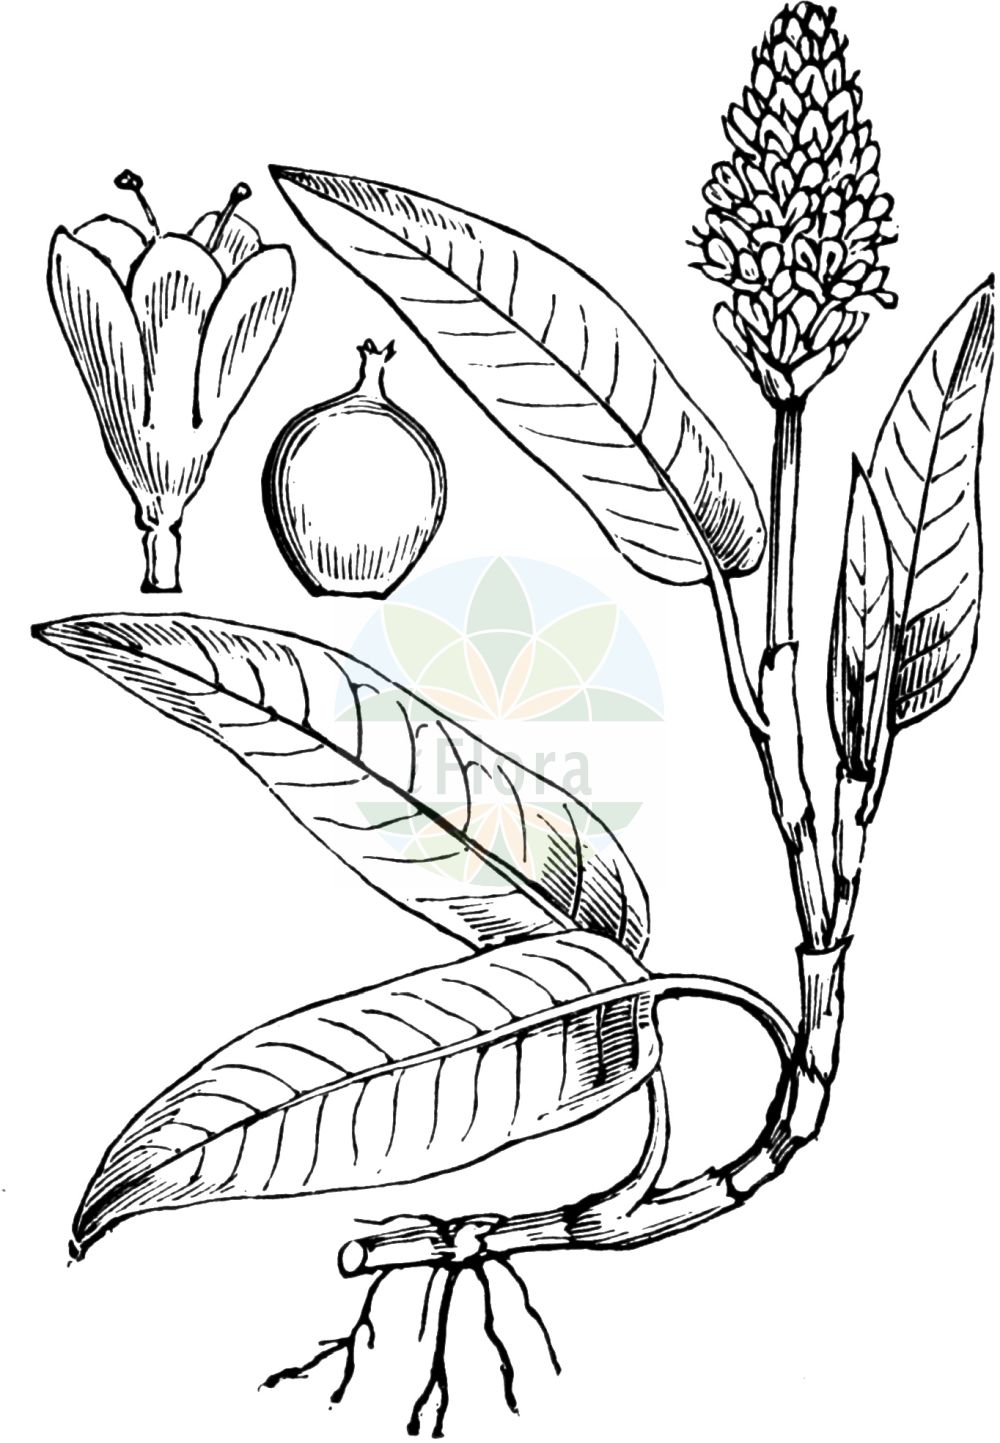 Historische Abbildung von Persicaria amphibia (Wasser-Knöterich - Amphibious Bistort). Das Bild zeigt Blatt, Bluete, Frucht und Same. ---- Historical Drawing of Persicaria amphibia (Wasser-Knöterich - Amphibious Bistort). The image is showing leaf, flower, fruit and seed.(Persicaria amphibia,Wasser-Knöterich,Amphibious Bistort,Persicaria amphibia,Polygonum amphibium,Polygonum amphibium var. terrestre,Wasser-Knoeterich,Amphibious Bistort,Water Knotweed,Devil's Shoestring,Perennial Knotgrass,Shoestringweed,Swamp Smartweed,Water Smartweed,Willow Grass,Persicaria,Knöterich,Knotgrass,Polygonaceae,Knöterichgewächse,Knotgrass family,Blatt,Bluete,Frucht,Same,leaf,flower,fruit,seed,Fitch et al. (1880))